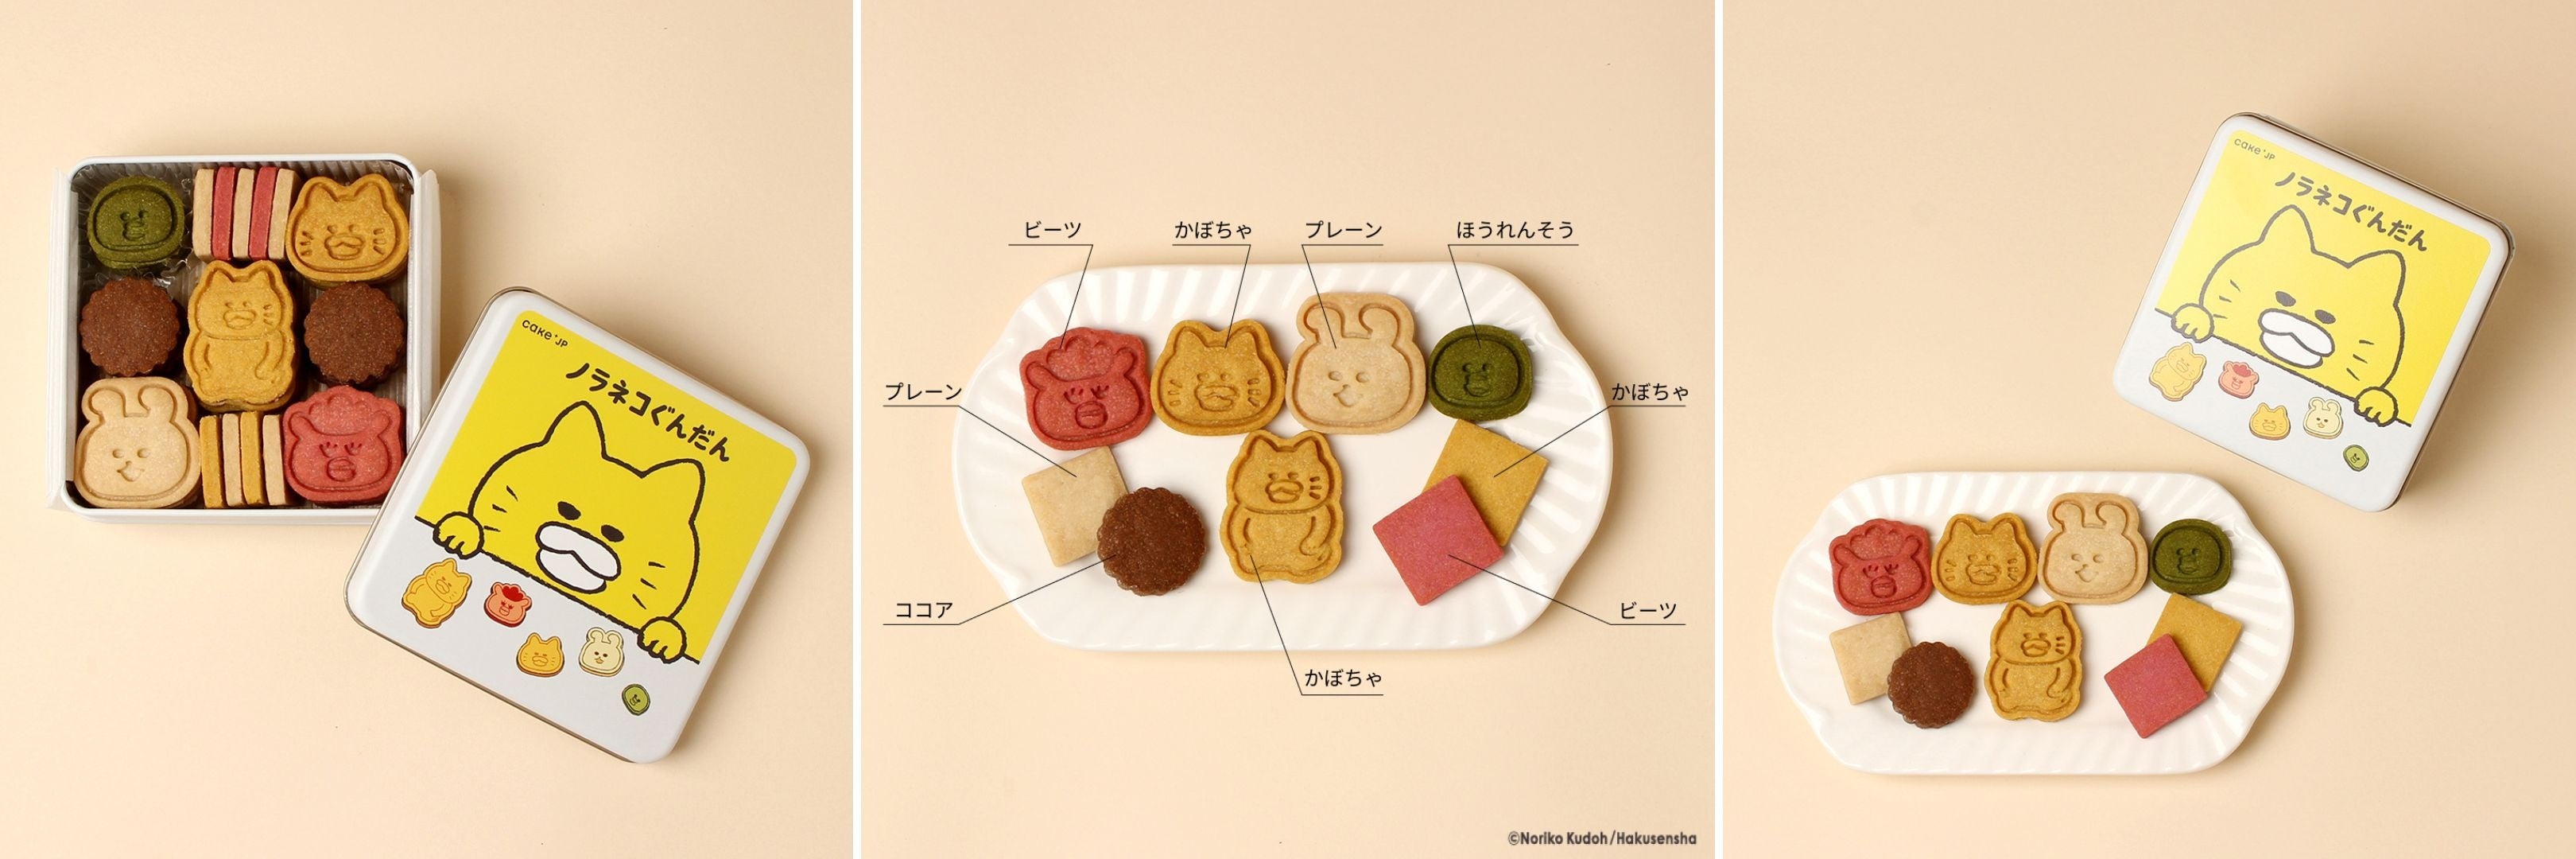 累計300万部突破の絵本『ノラネコぐんだん』のコラボレーションクッキー缶をCake.jpにて7月5日から販売開始